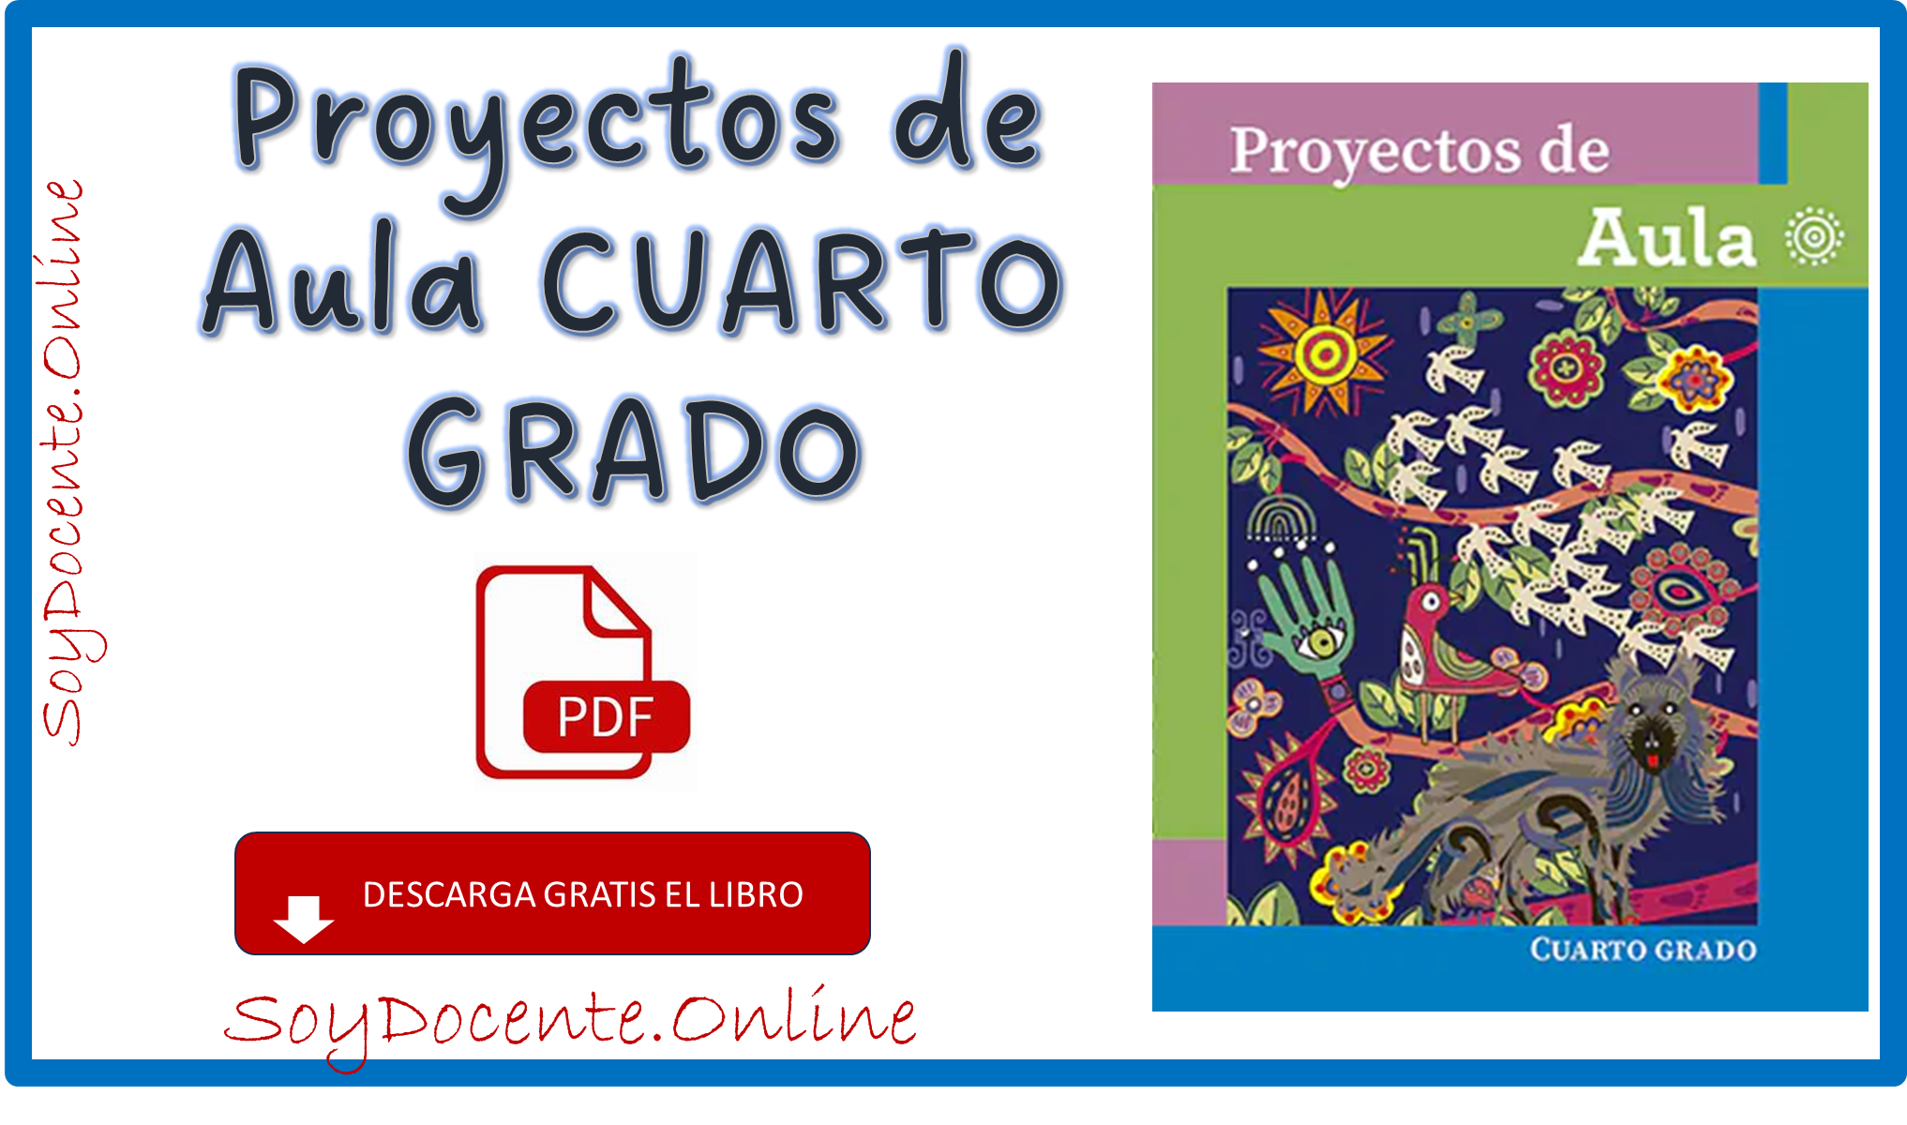 Descarga en PDF gratis el Libro de Proyectos de aula cuarto grado de Primaria obra oficial de la SEP, distribuido por la CONALITEG